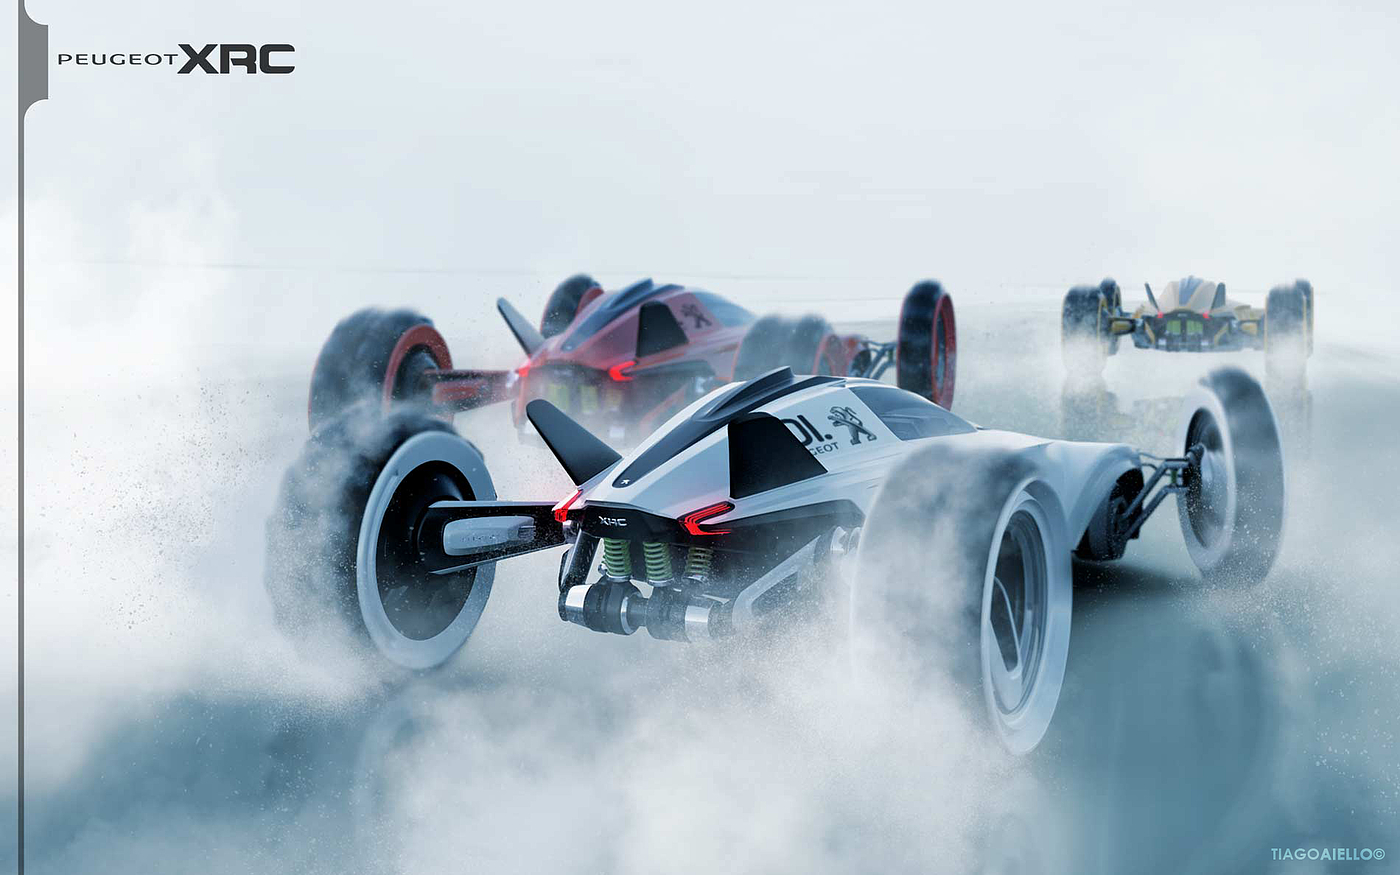 标致，汽车，赛车，概念设计，沙漠，极地，方程式，Peugeot XRC，